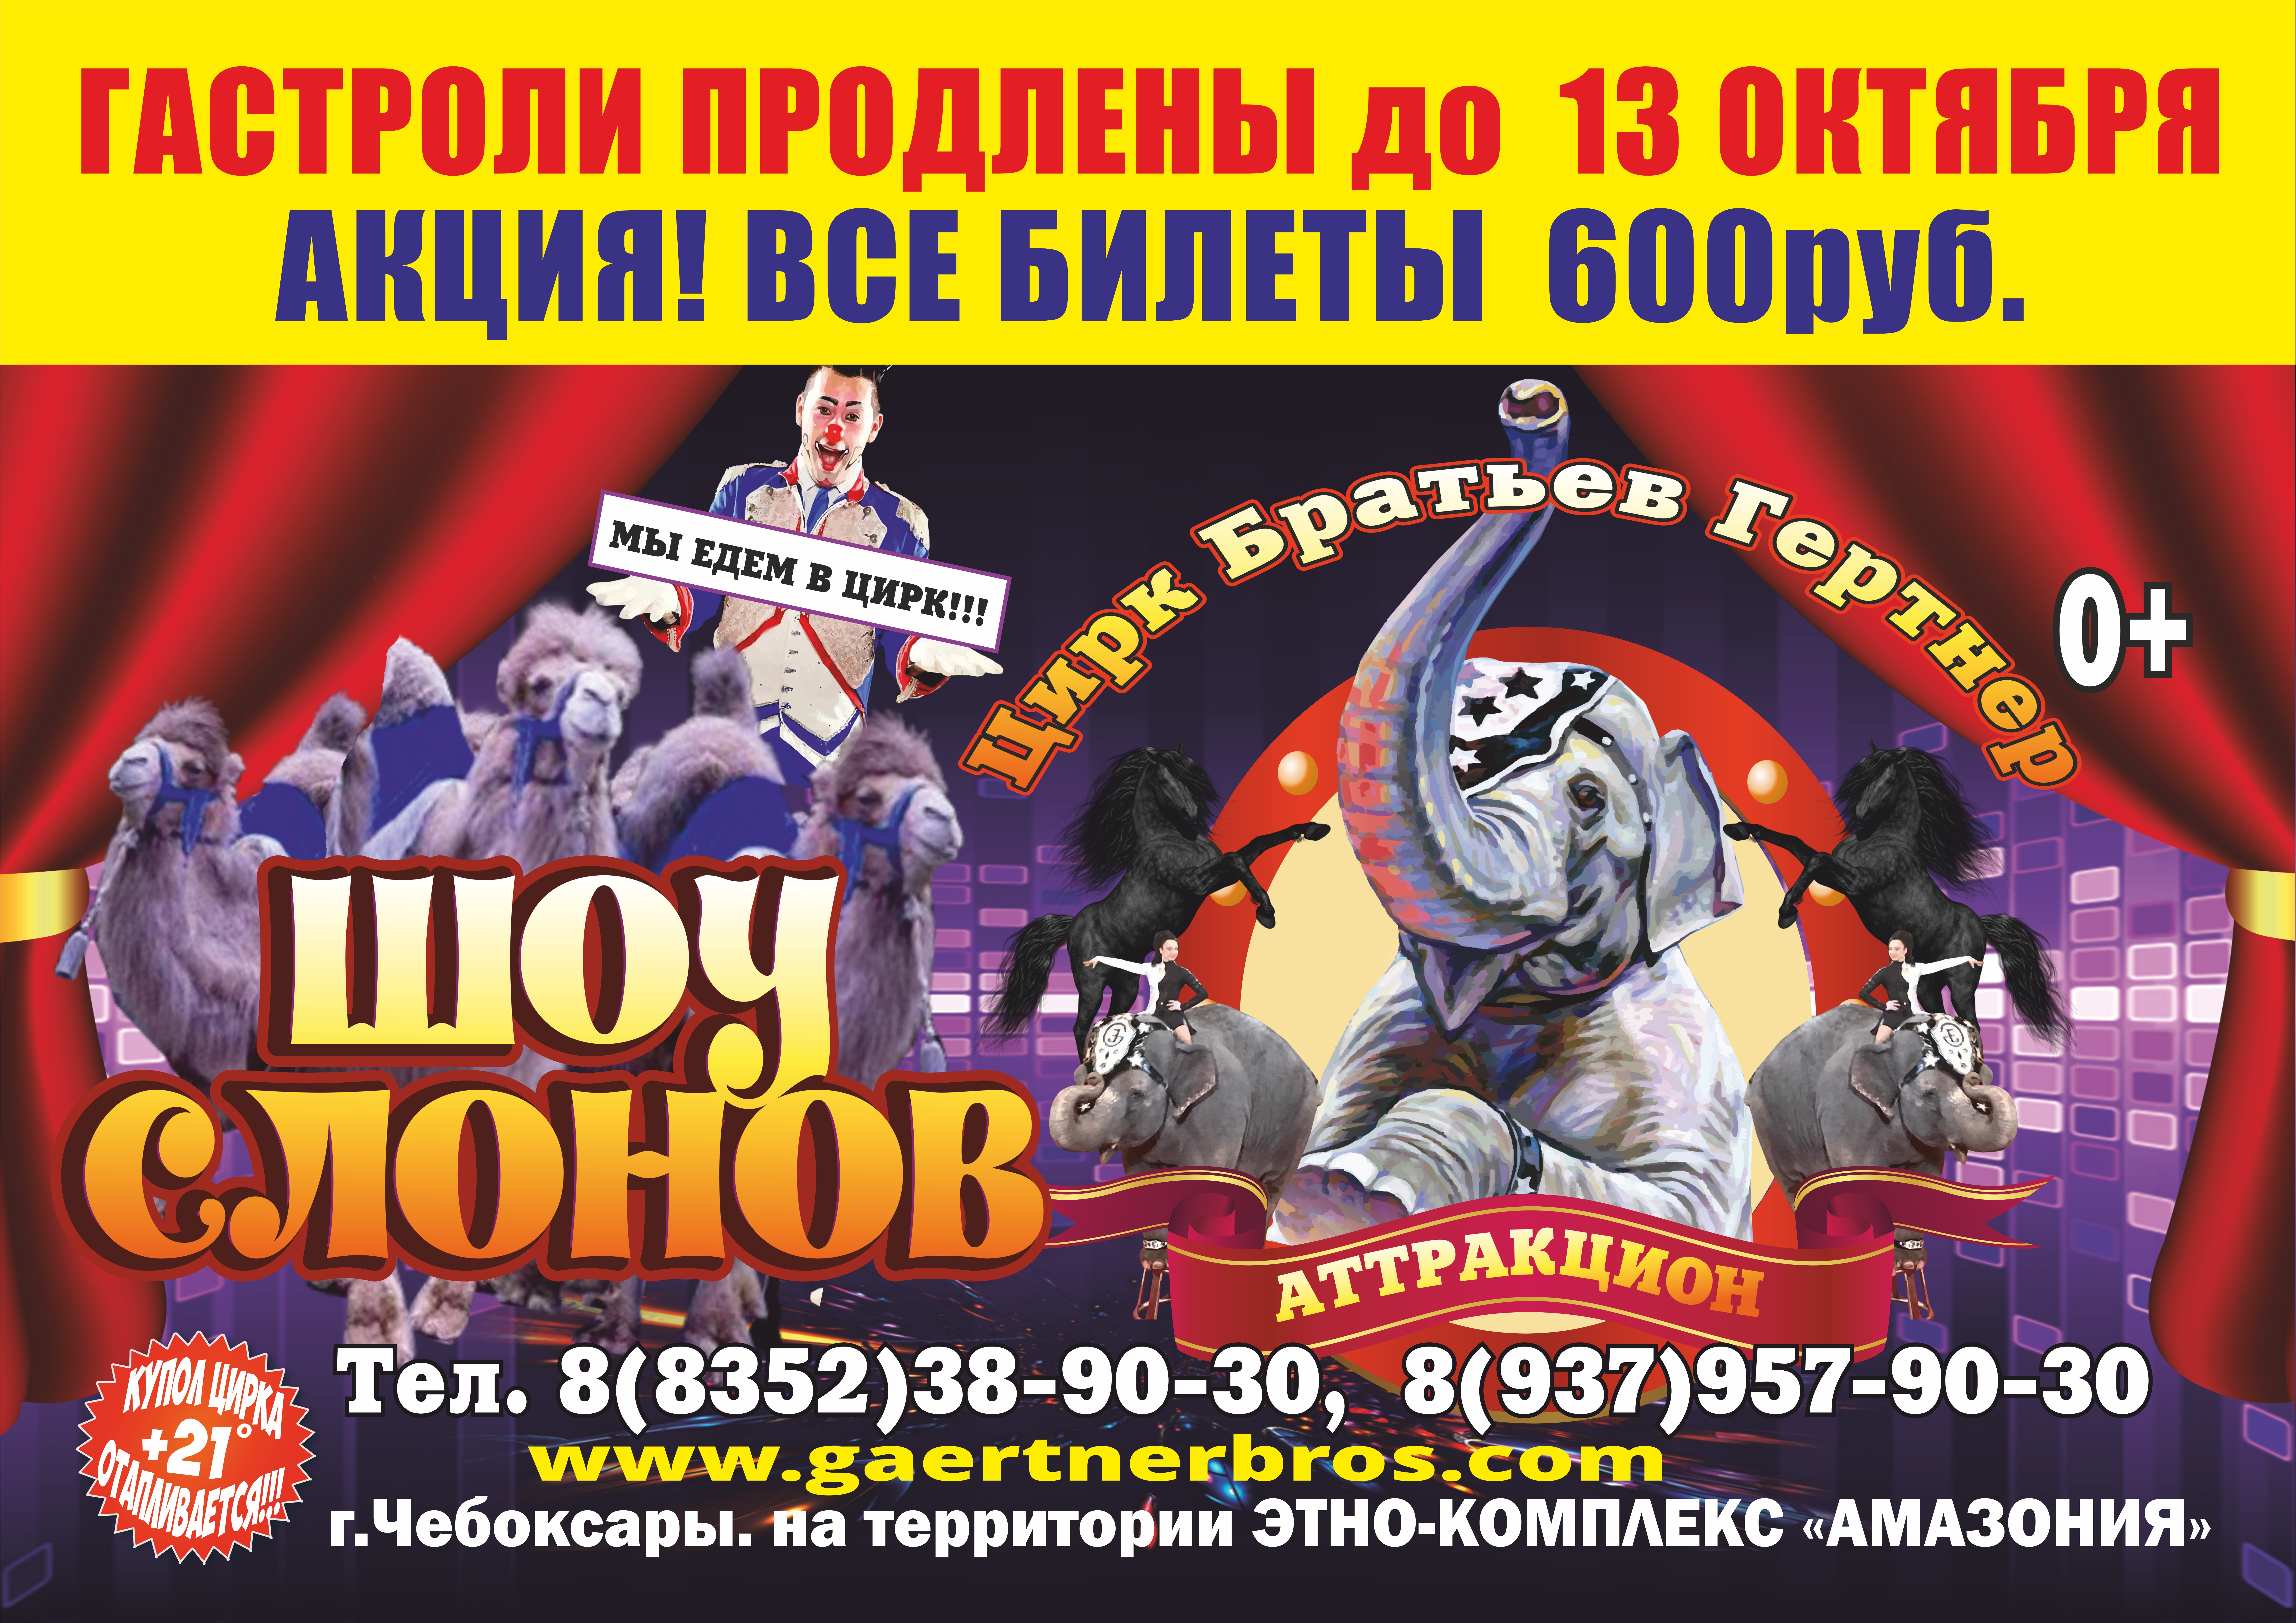 Цирк шоу слонов братьев Гертнер в Чебоксарах